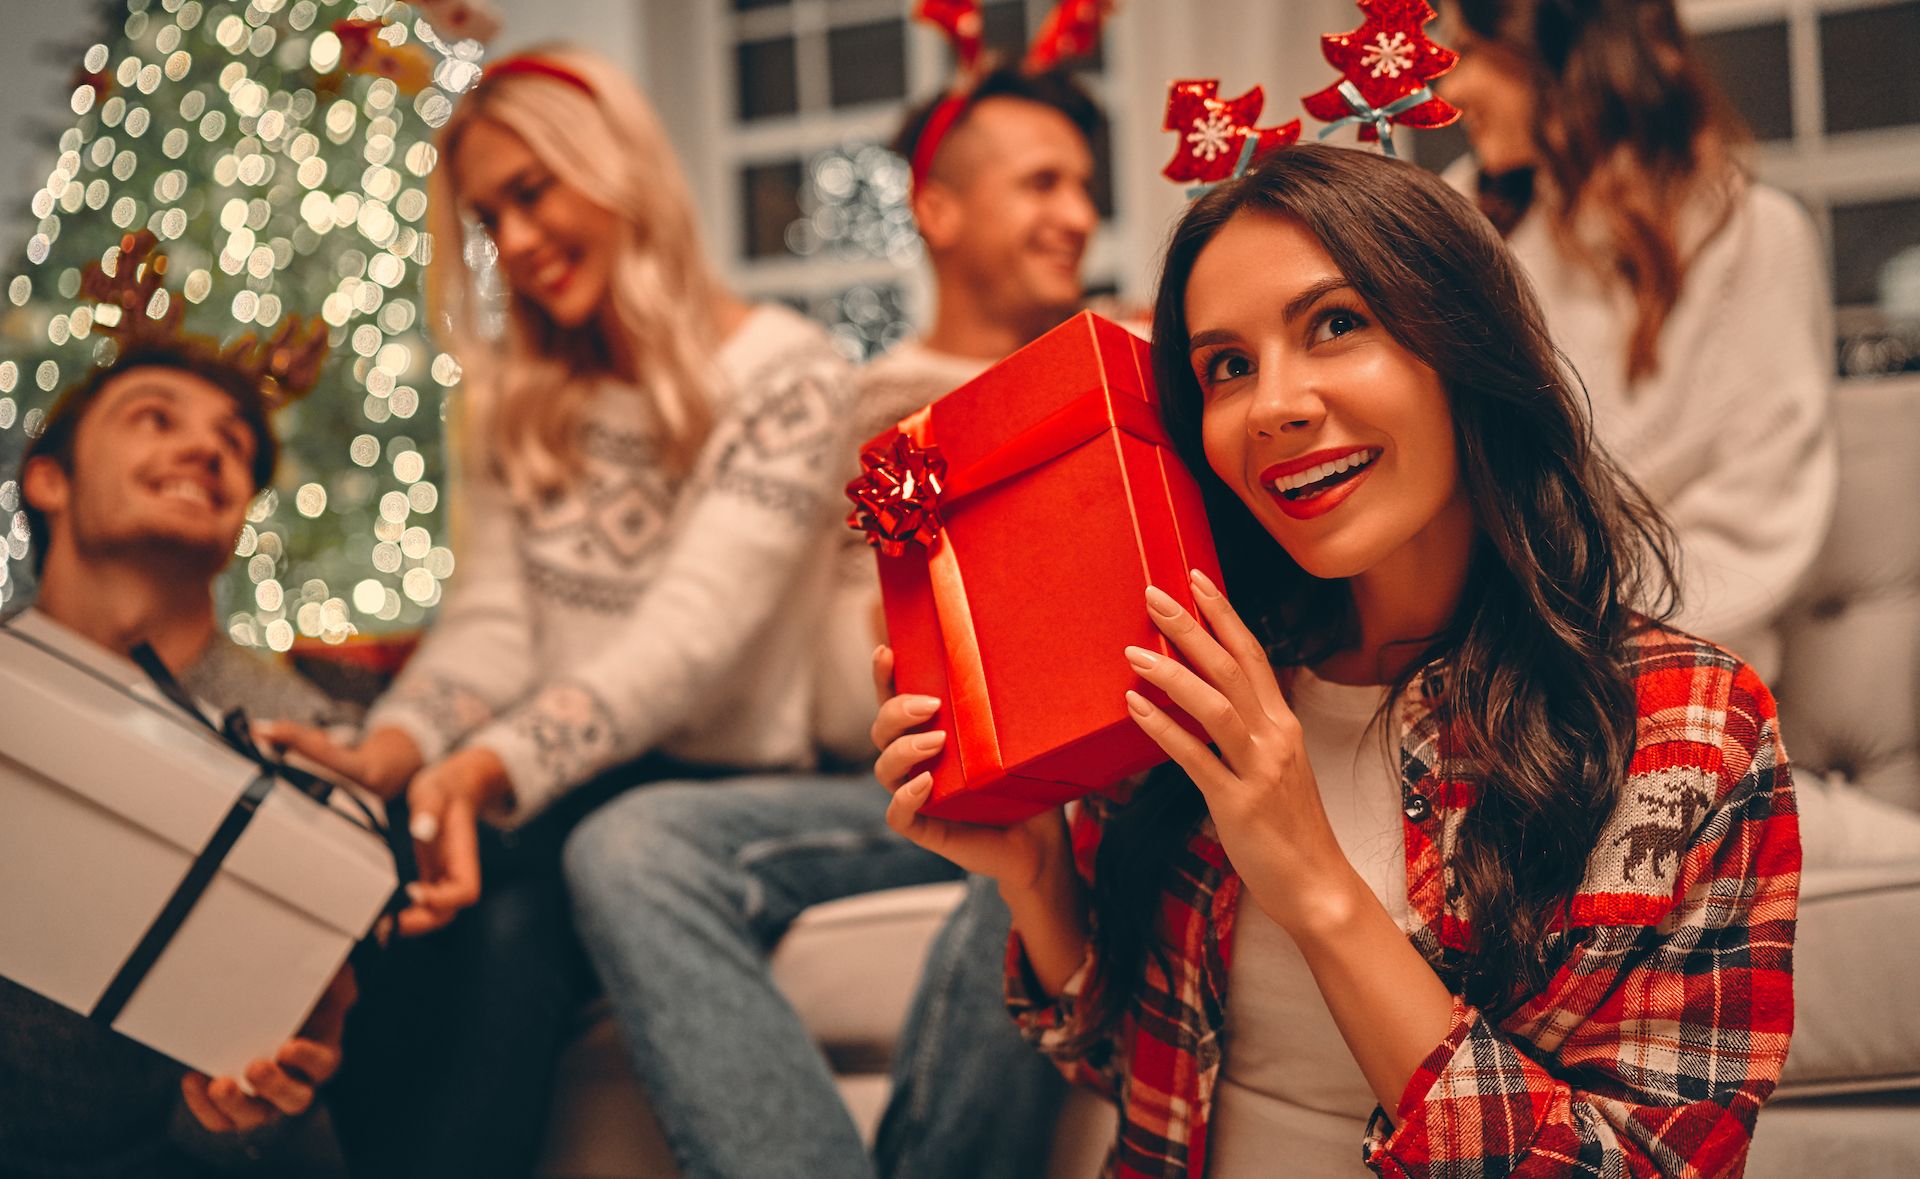 Cadeau original pas cher : 5 petits cadeaux trop choux à offrir à Noël #13  - Taaora - Blog Mode, Tendances, Looks